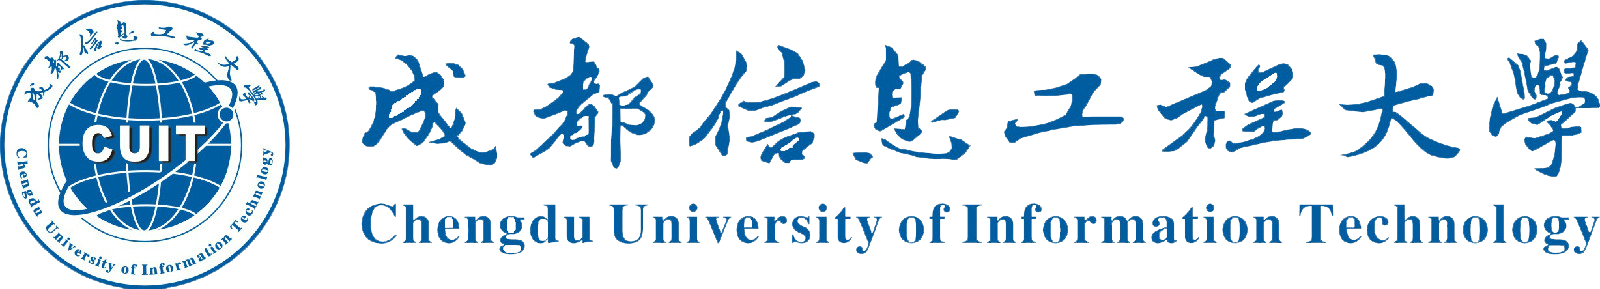 成都信息工程大学 透明logo 1600-289.png